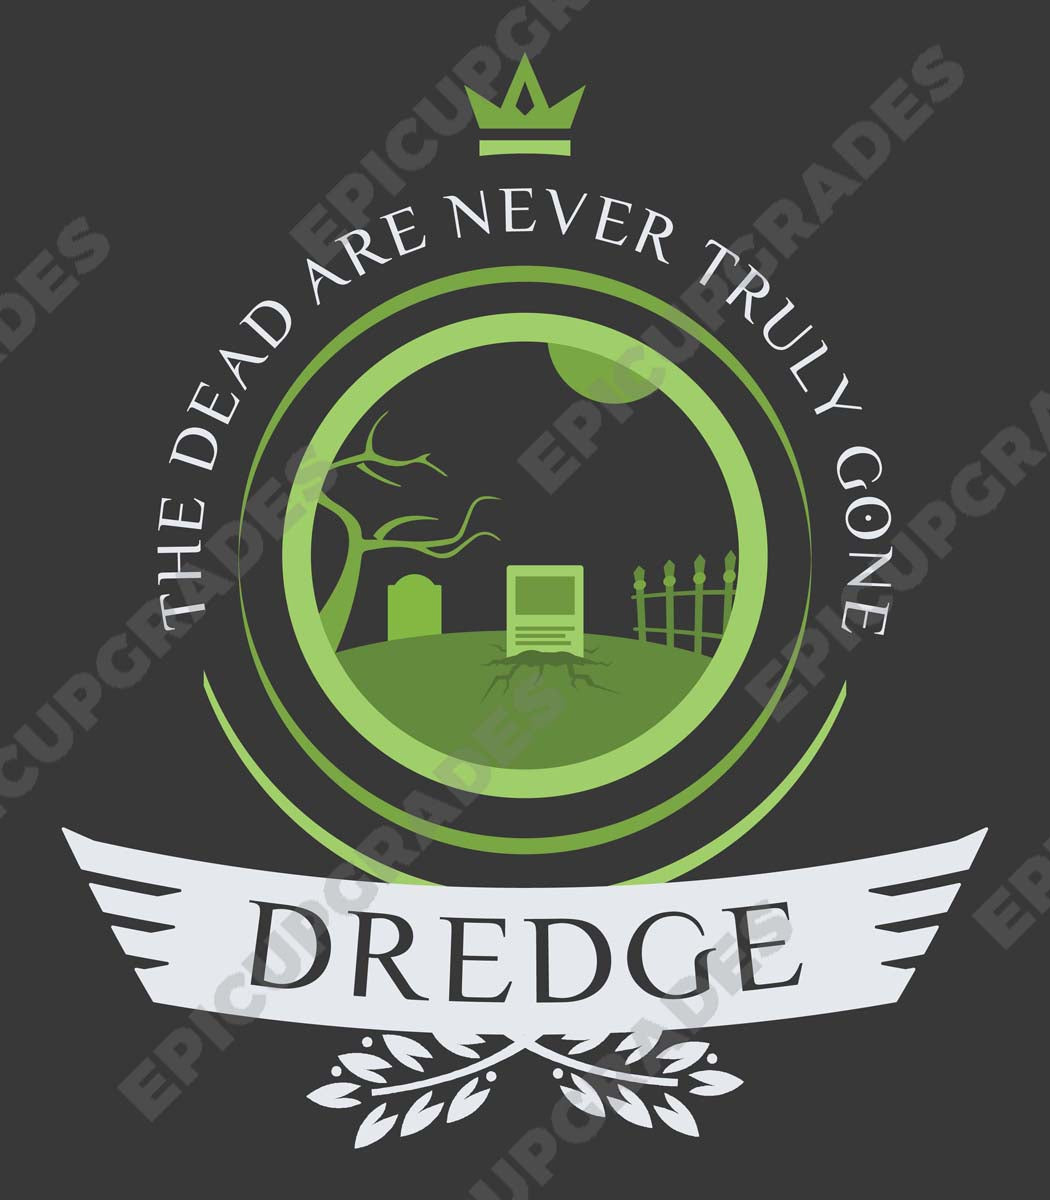 Dredge Life V1 - Magic the Gathering Unisex T-Shirt - epicupgrades